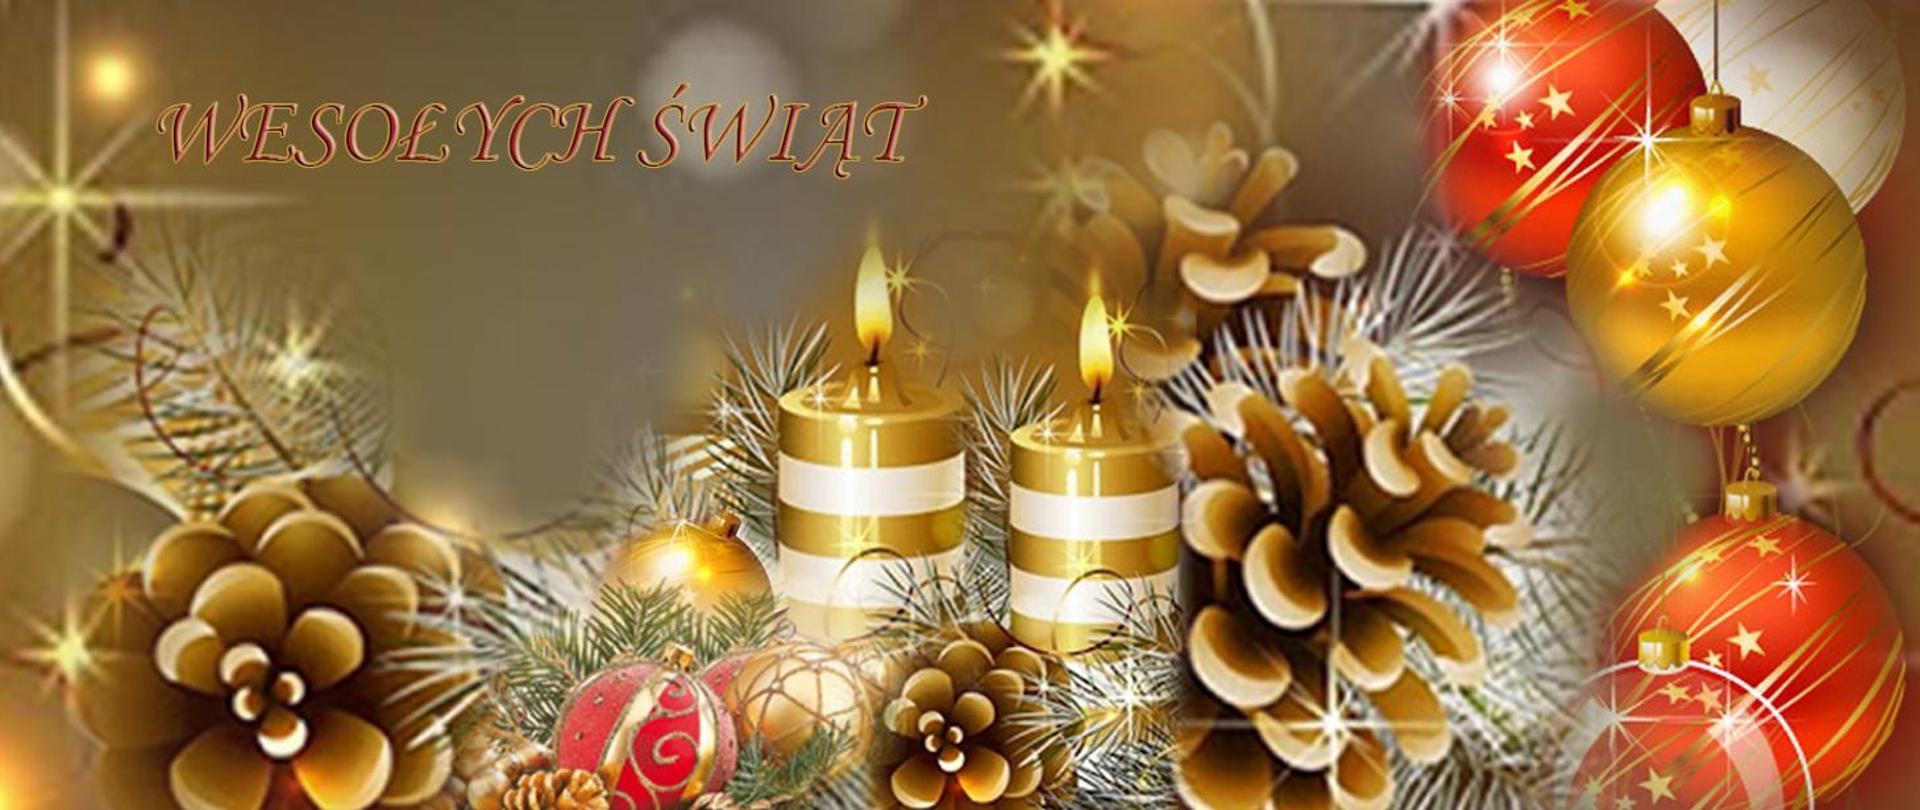 Wesołych Świąt – kompozycja świąteczna: świece, bombki, gałązki świerku, szyszki – przeważa kolor złoty.